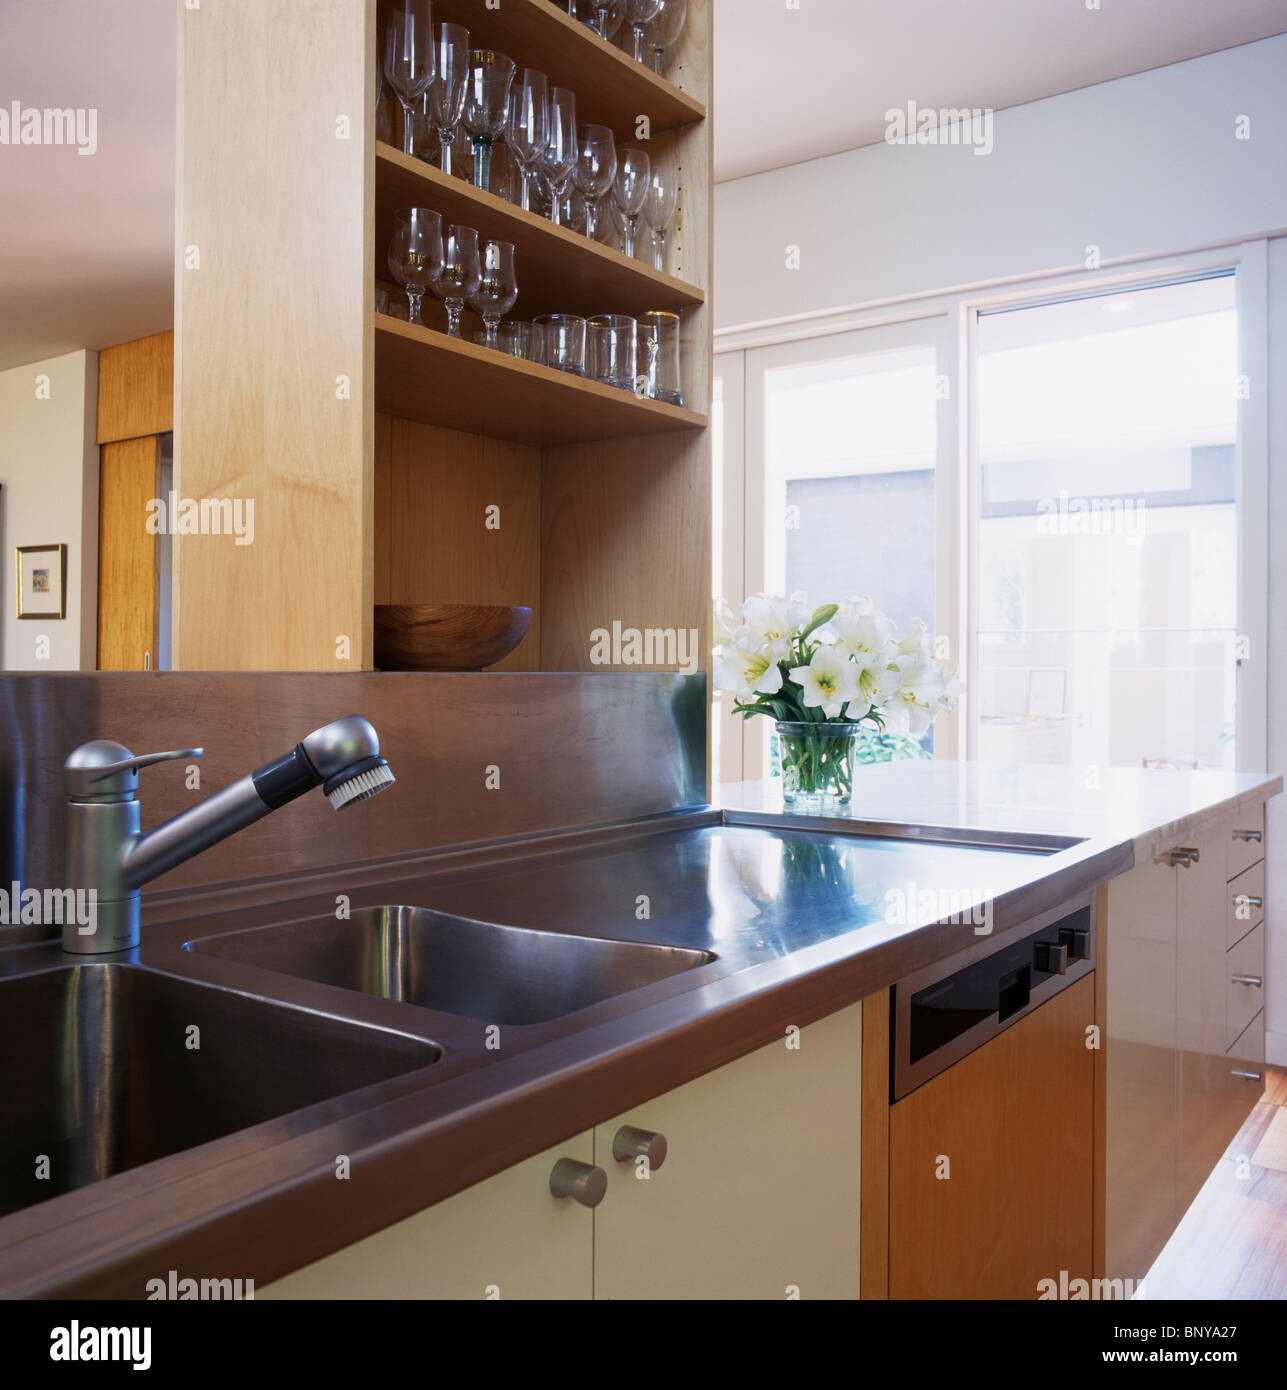 Copas de vino en los estantes arriba fregadero de acero inoxidable y encimera de cocina moderna Foto de stock